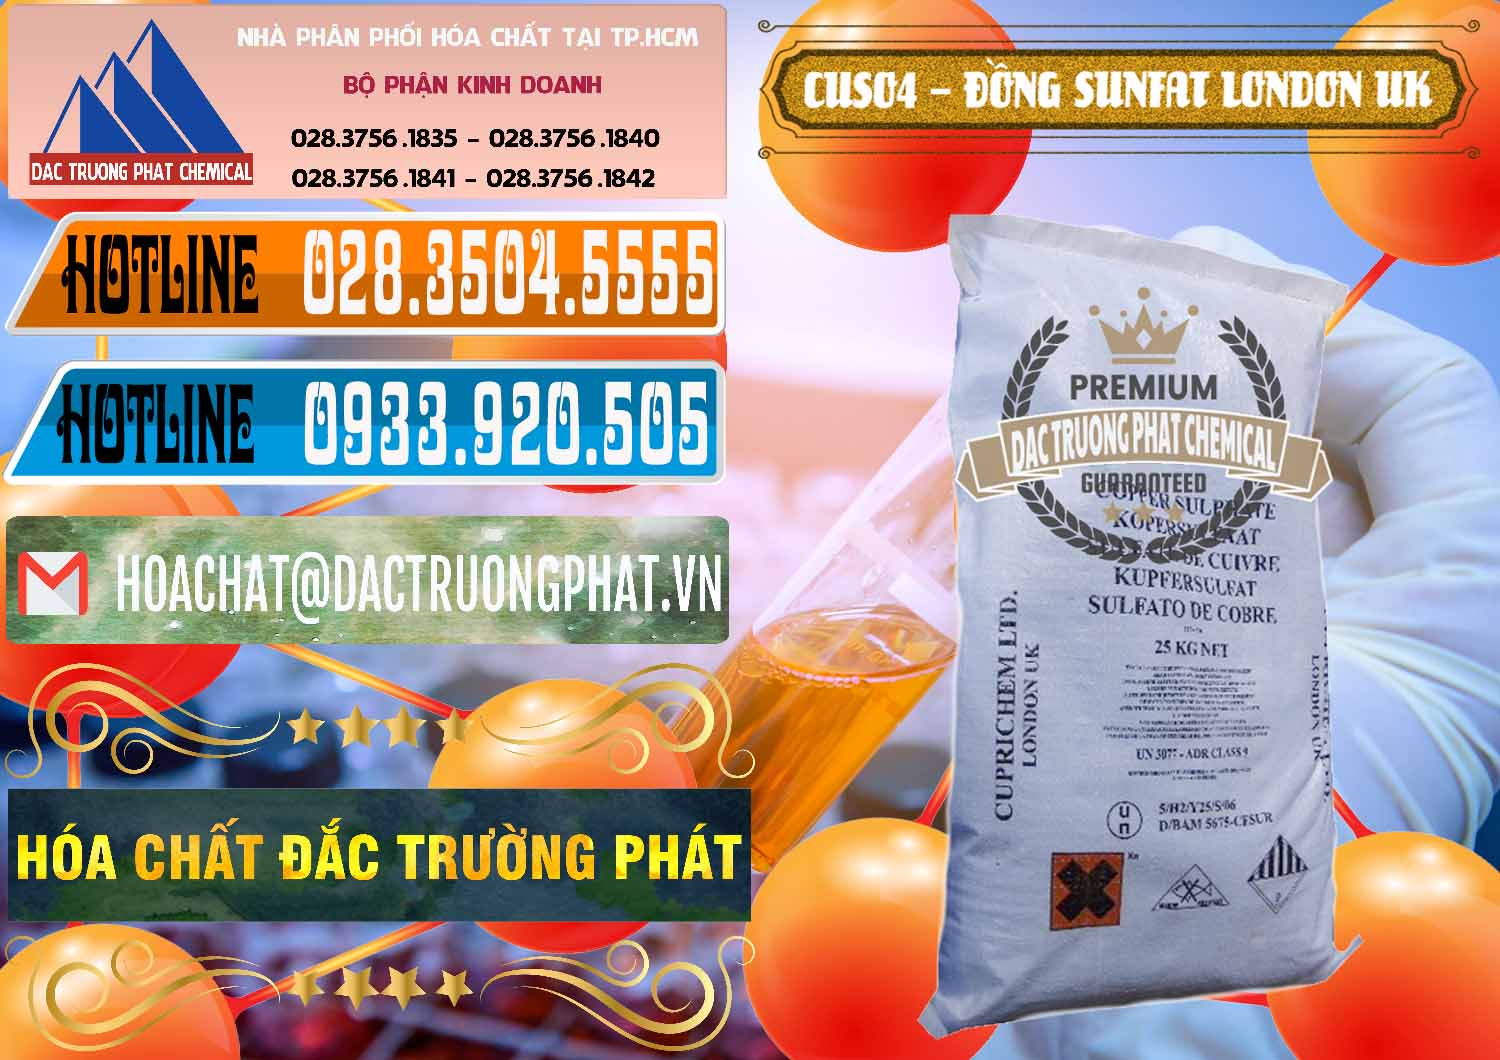 Nơi chuyên kinh doanh và bán CuSO4 – Đồng Sunfat Anh Uk Kingdoms - 0478 - Cty phân phối - bán hóa chất tại TP.HCM - stmp.net